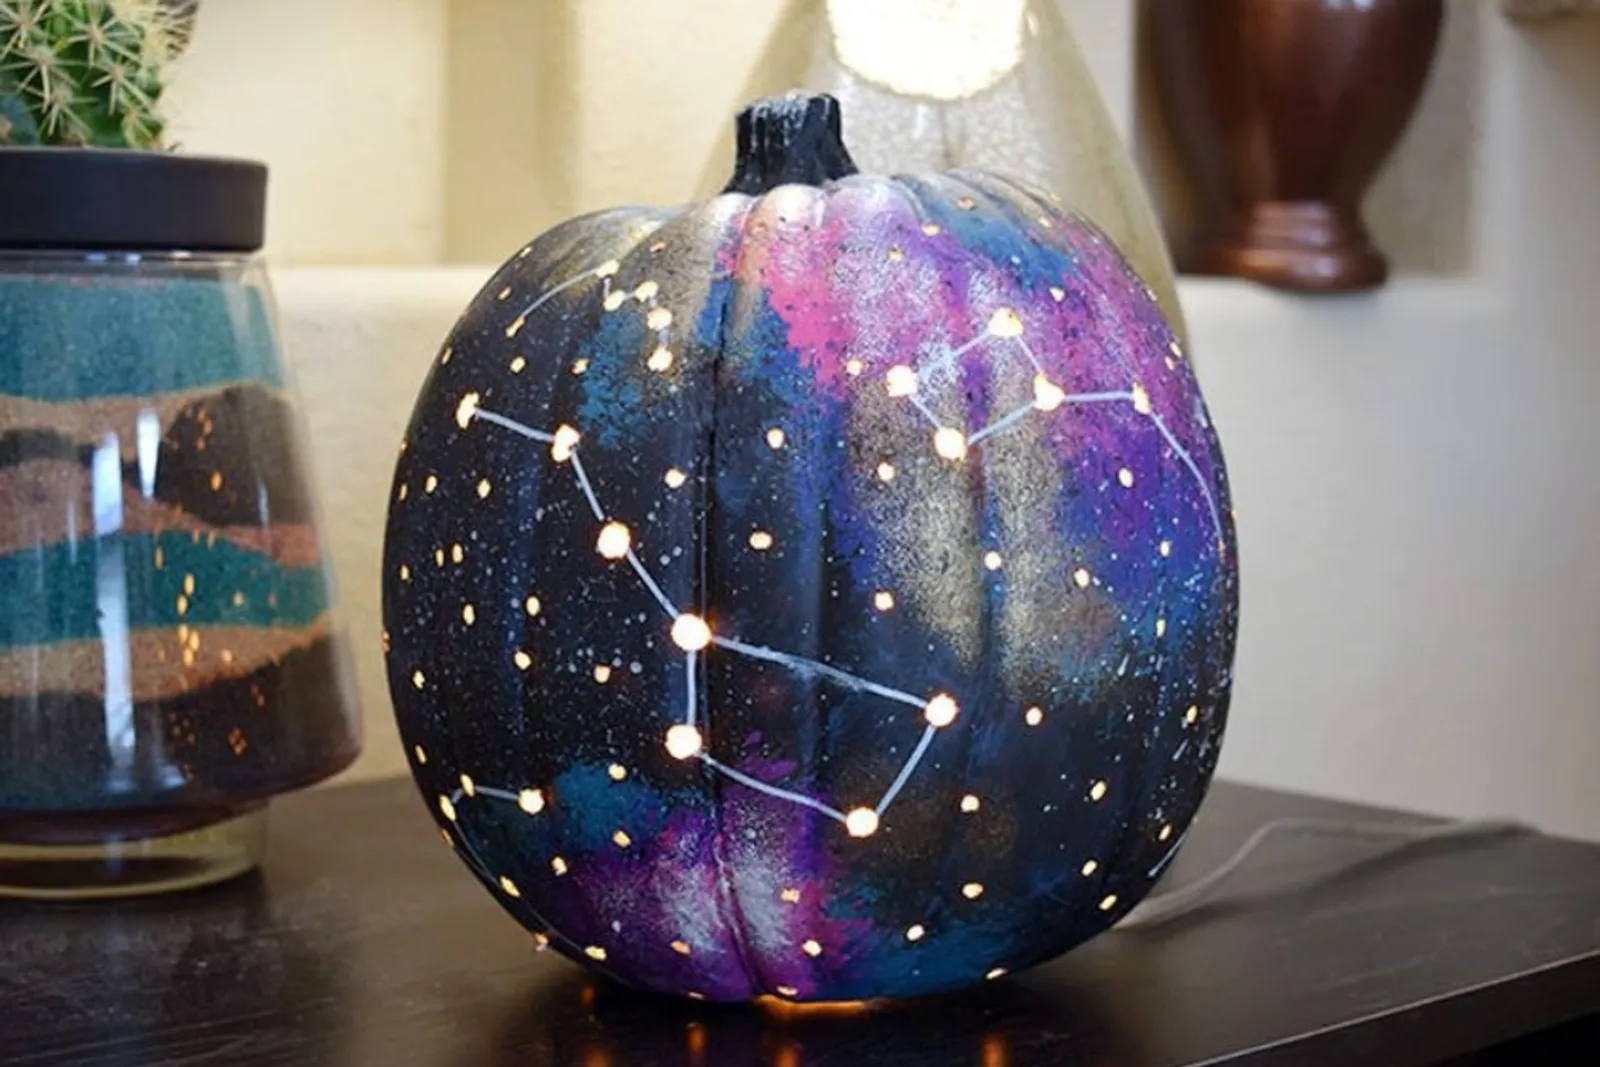 15 Ide Melukis Labu untuk Dekorasi Halloween yang Menggemaskan